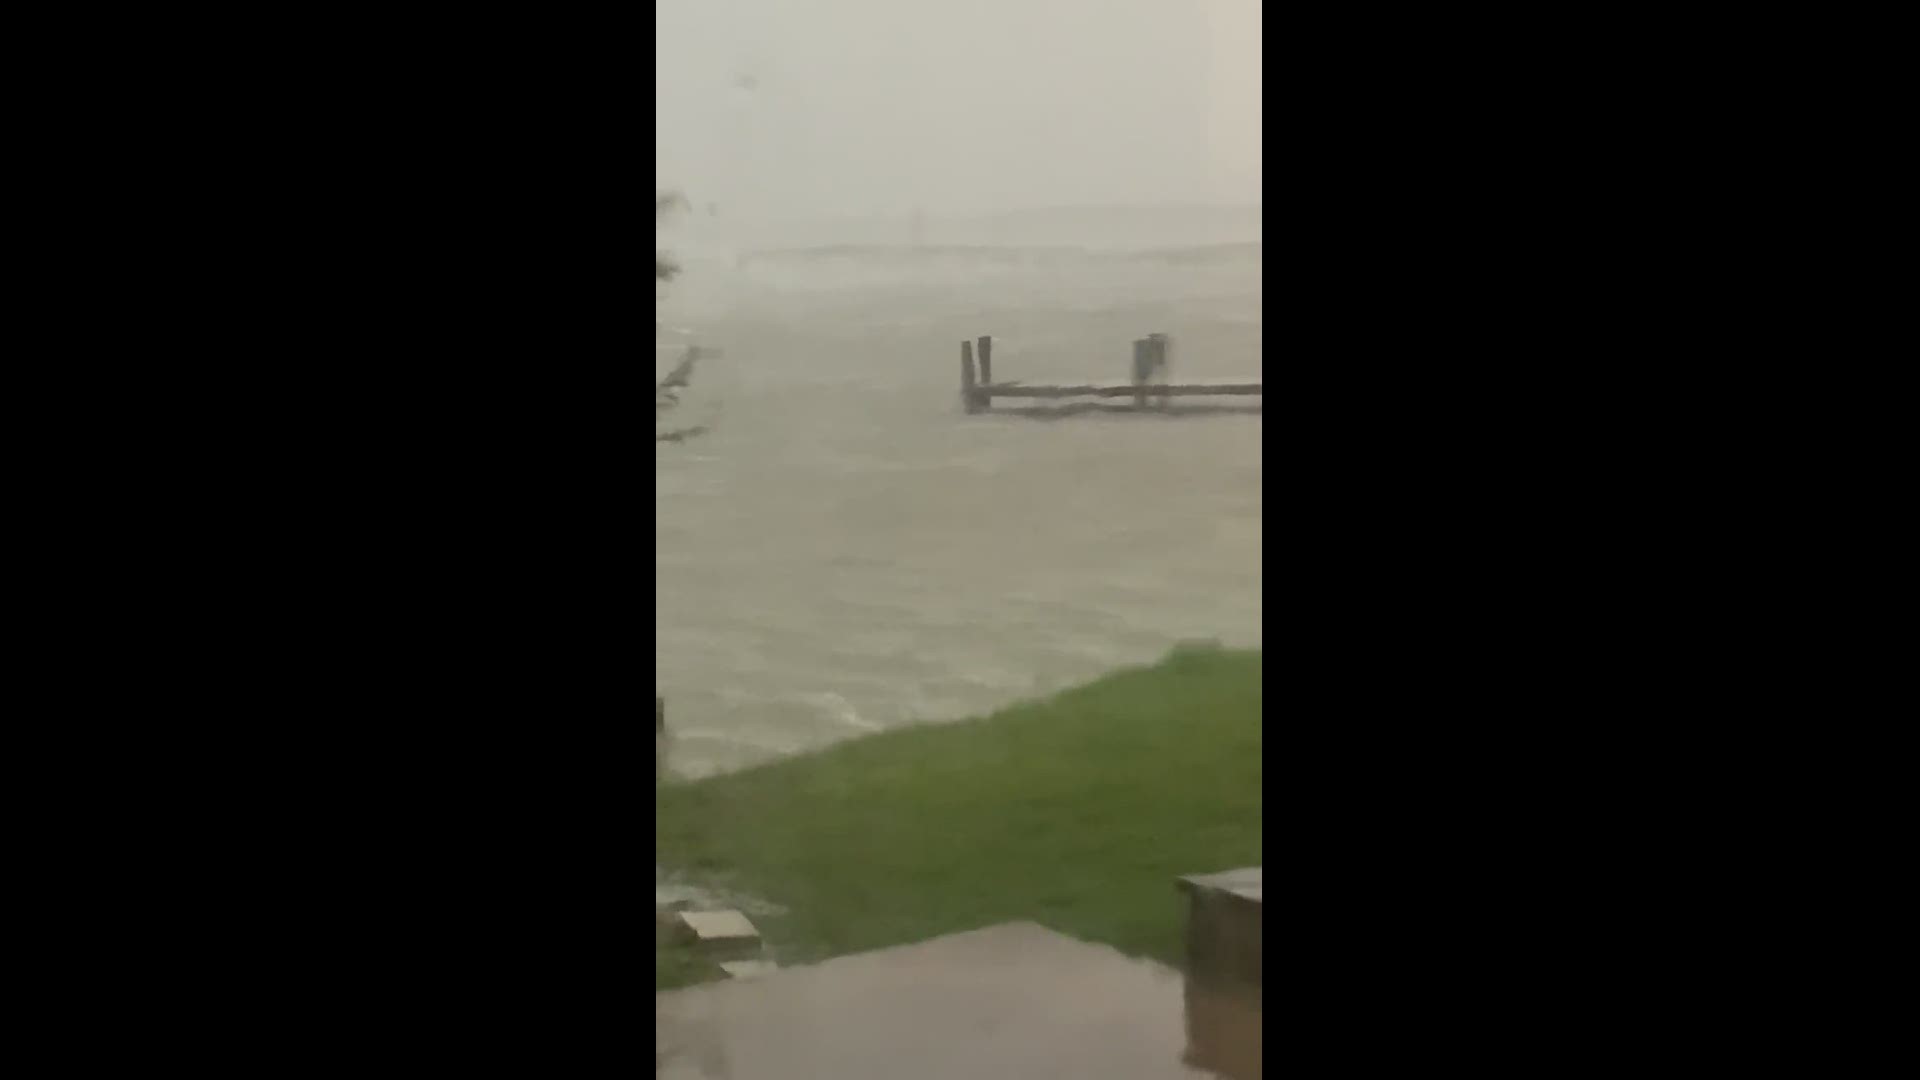 Hurricane Laura in La Belle, Texas.
Credit: Teri Villemez